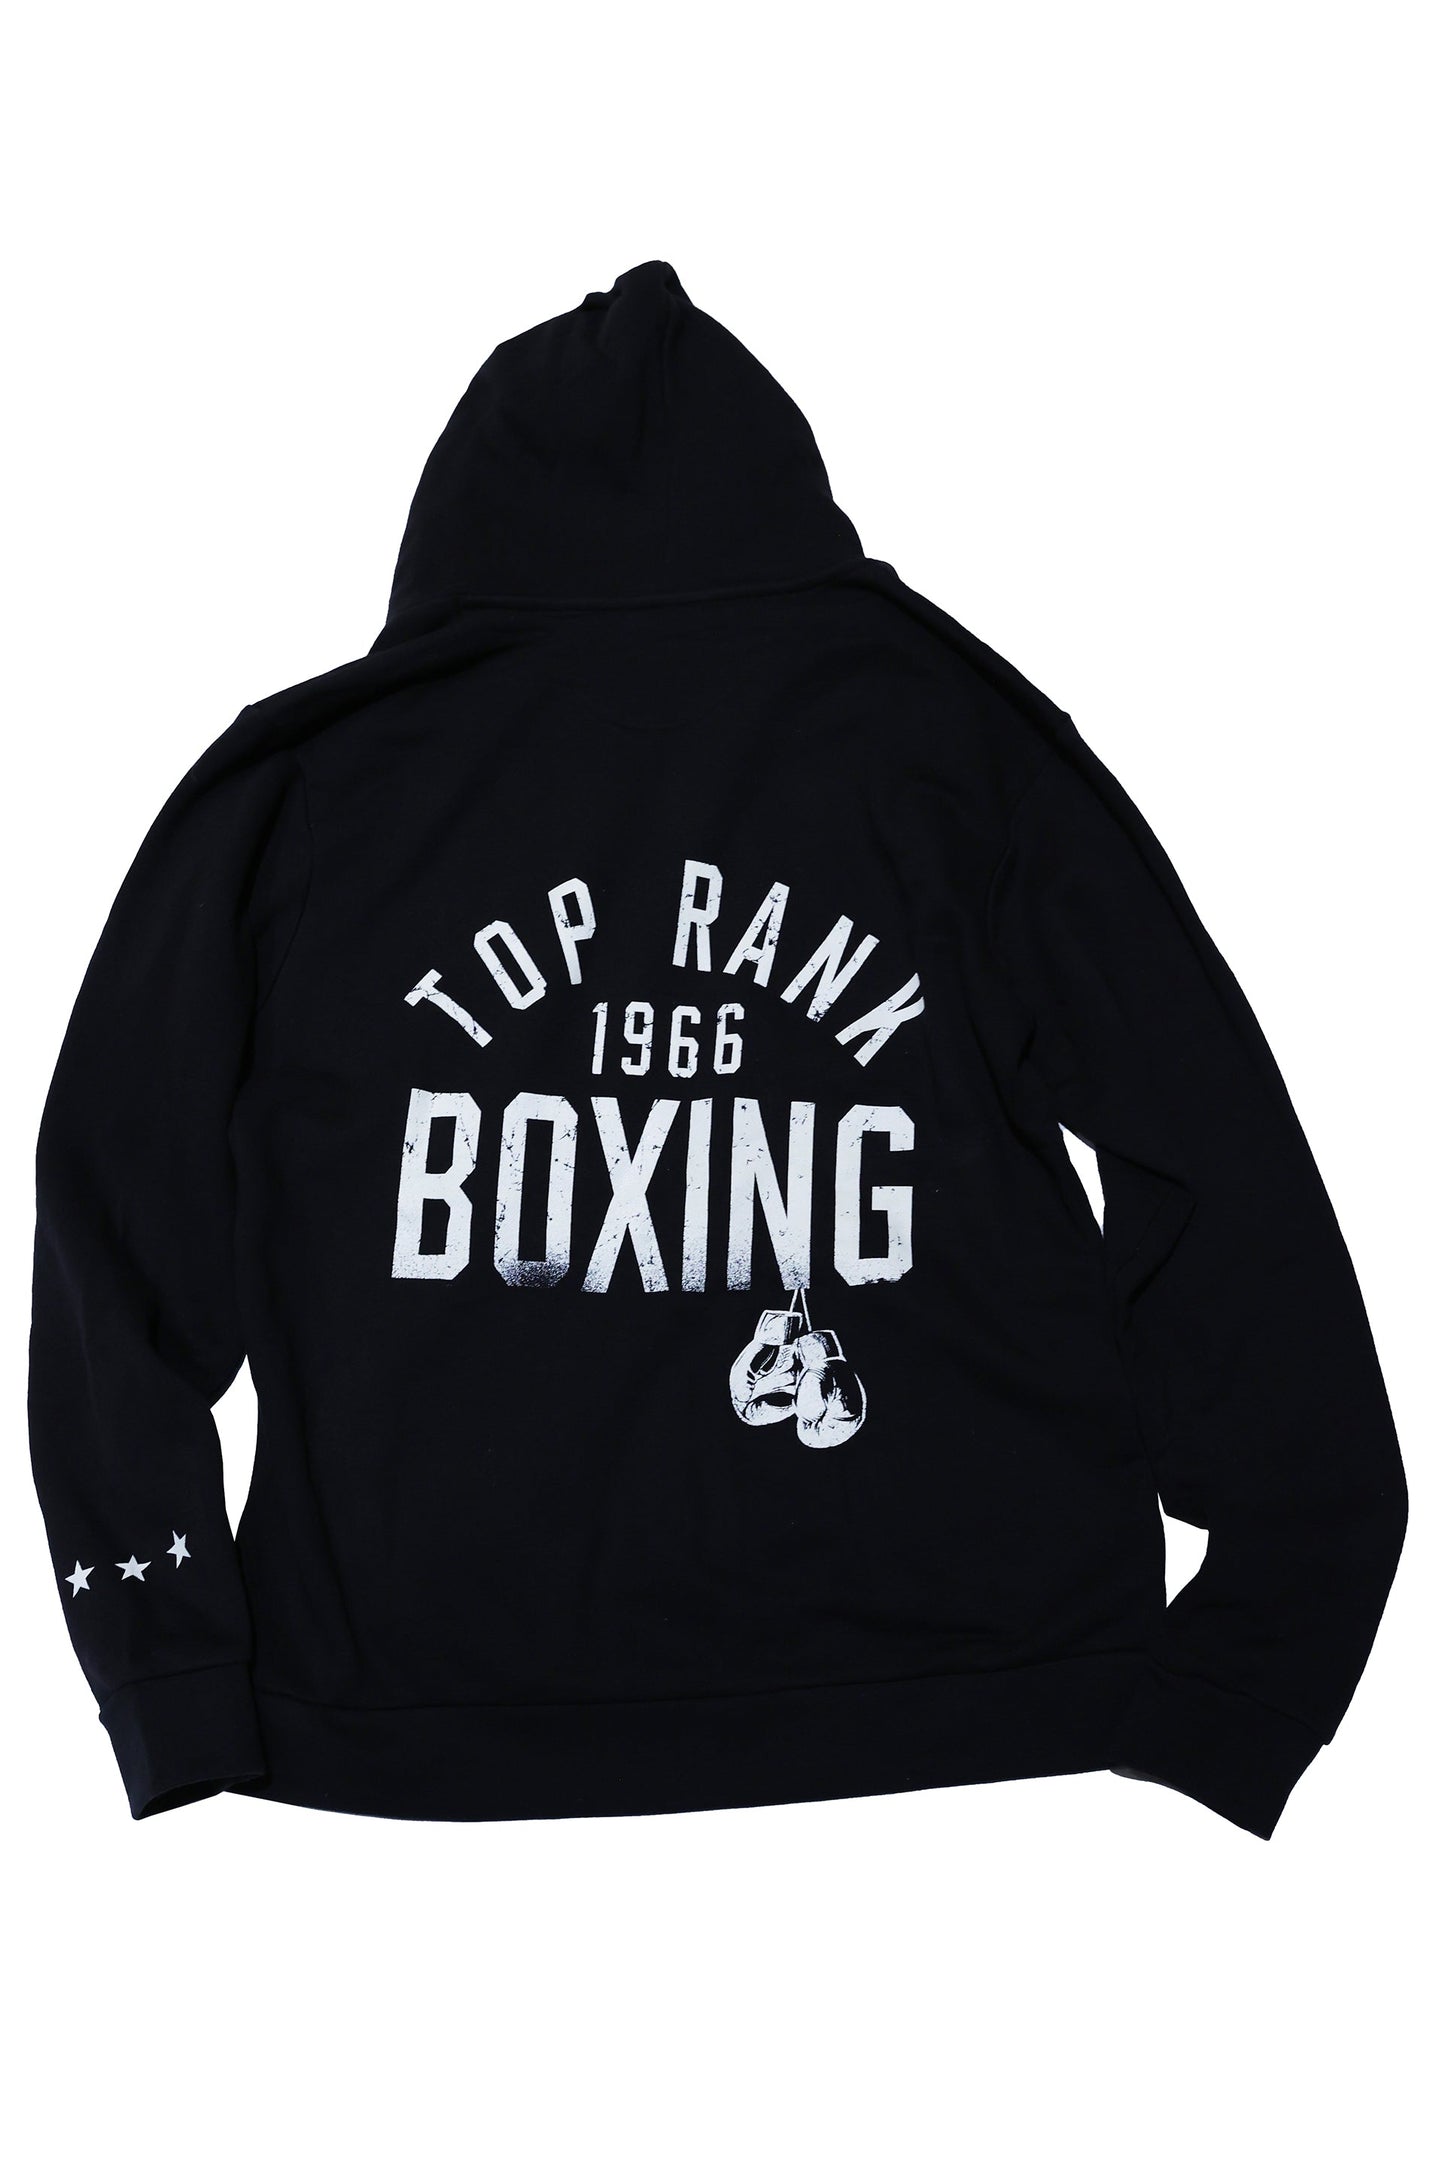 Unisex Top Rank Boxing Black Full Zip Hoodie